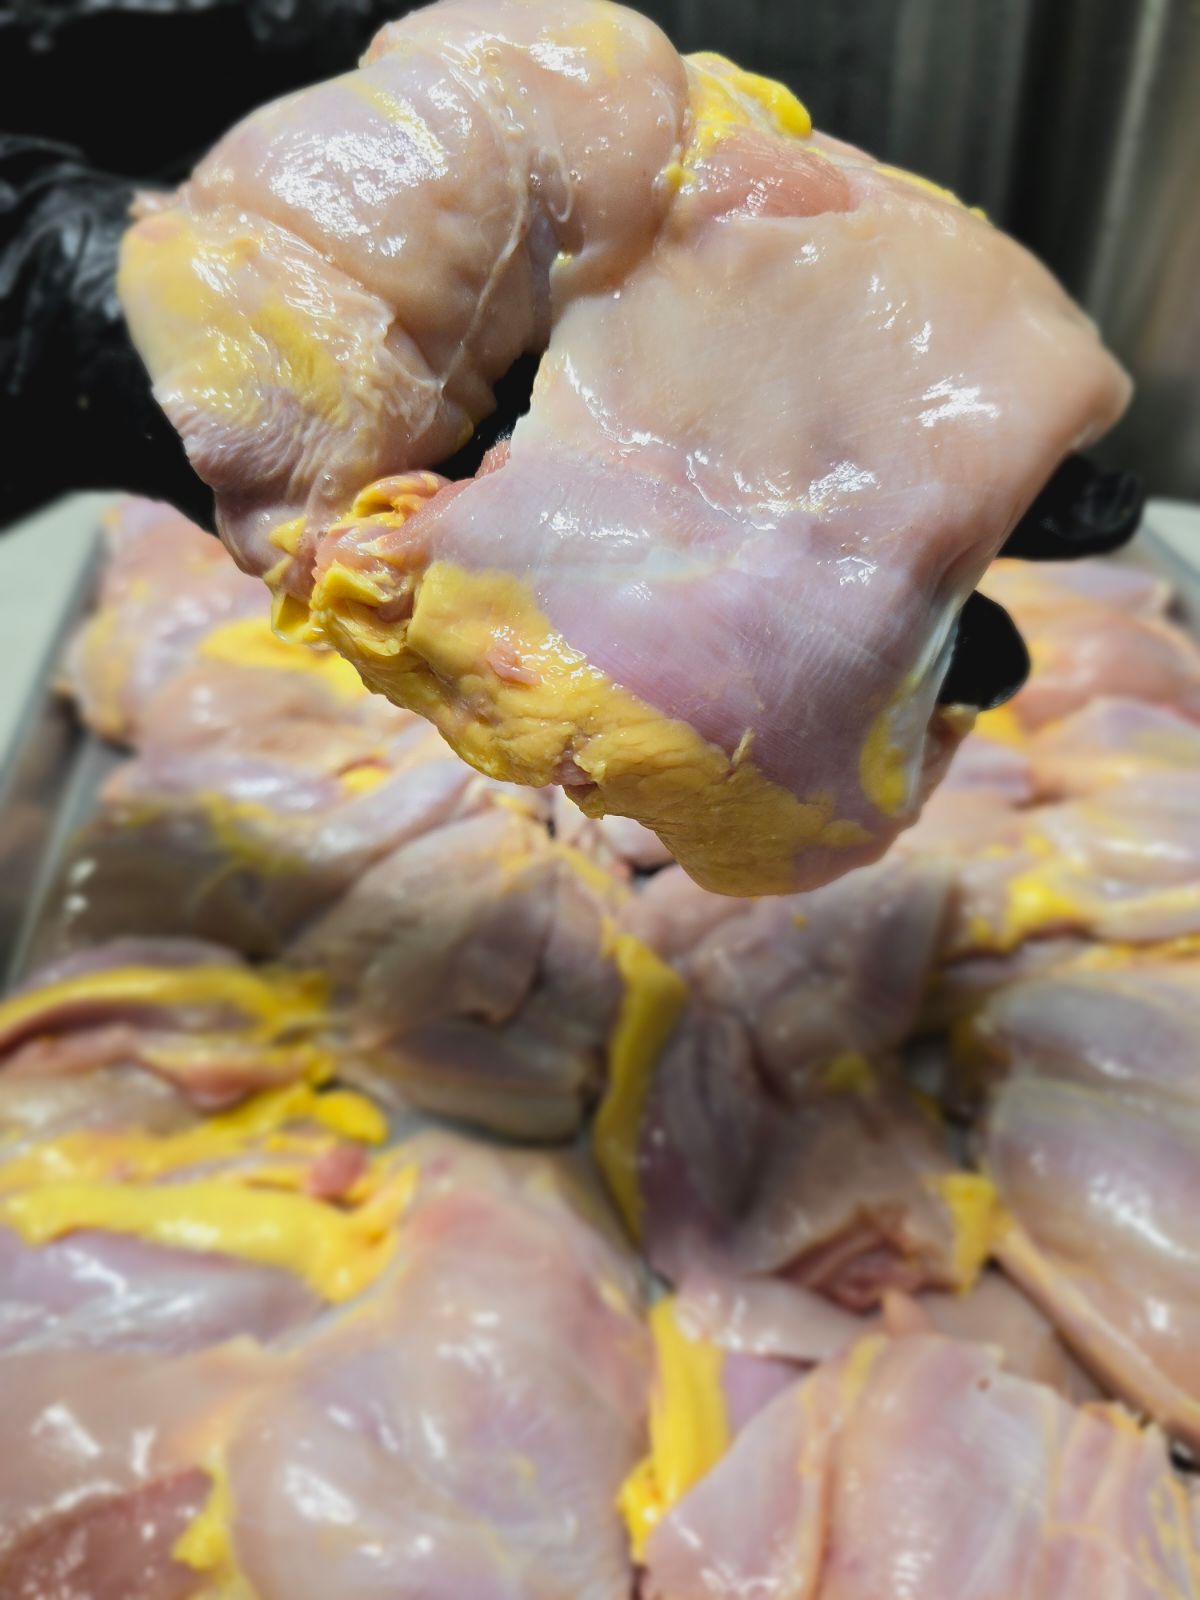 Pasture Raised French Sasso Chicken Thighs Boneless Skinless